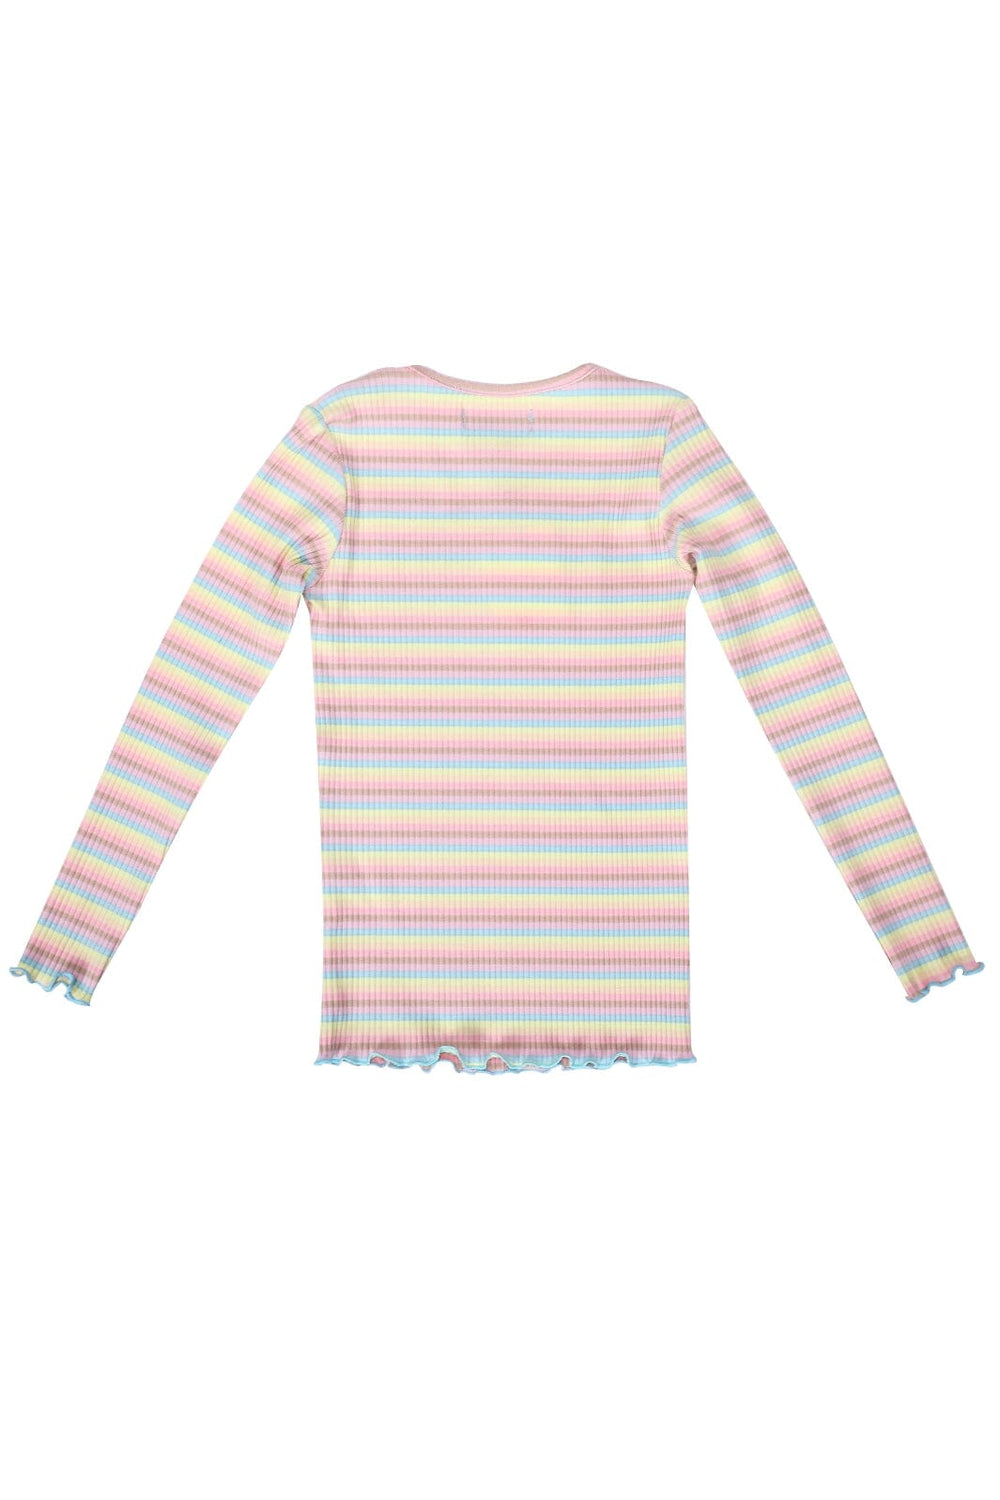 Liberte Ami - Natalia-Ls-Blouse-Kids - Dusty Multicolor Stripe Bluser 